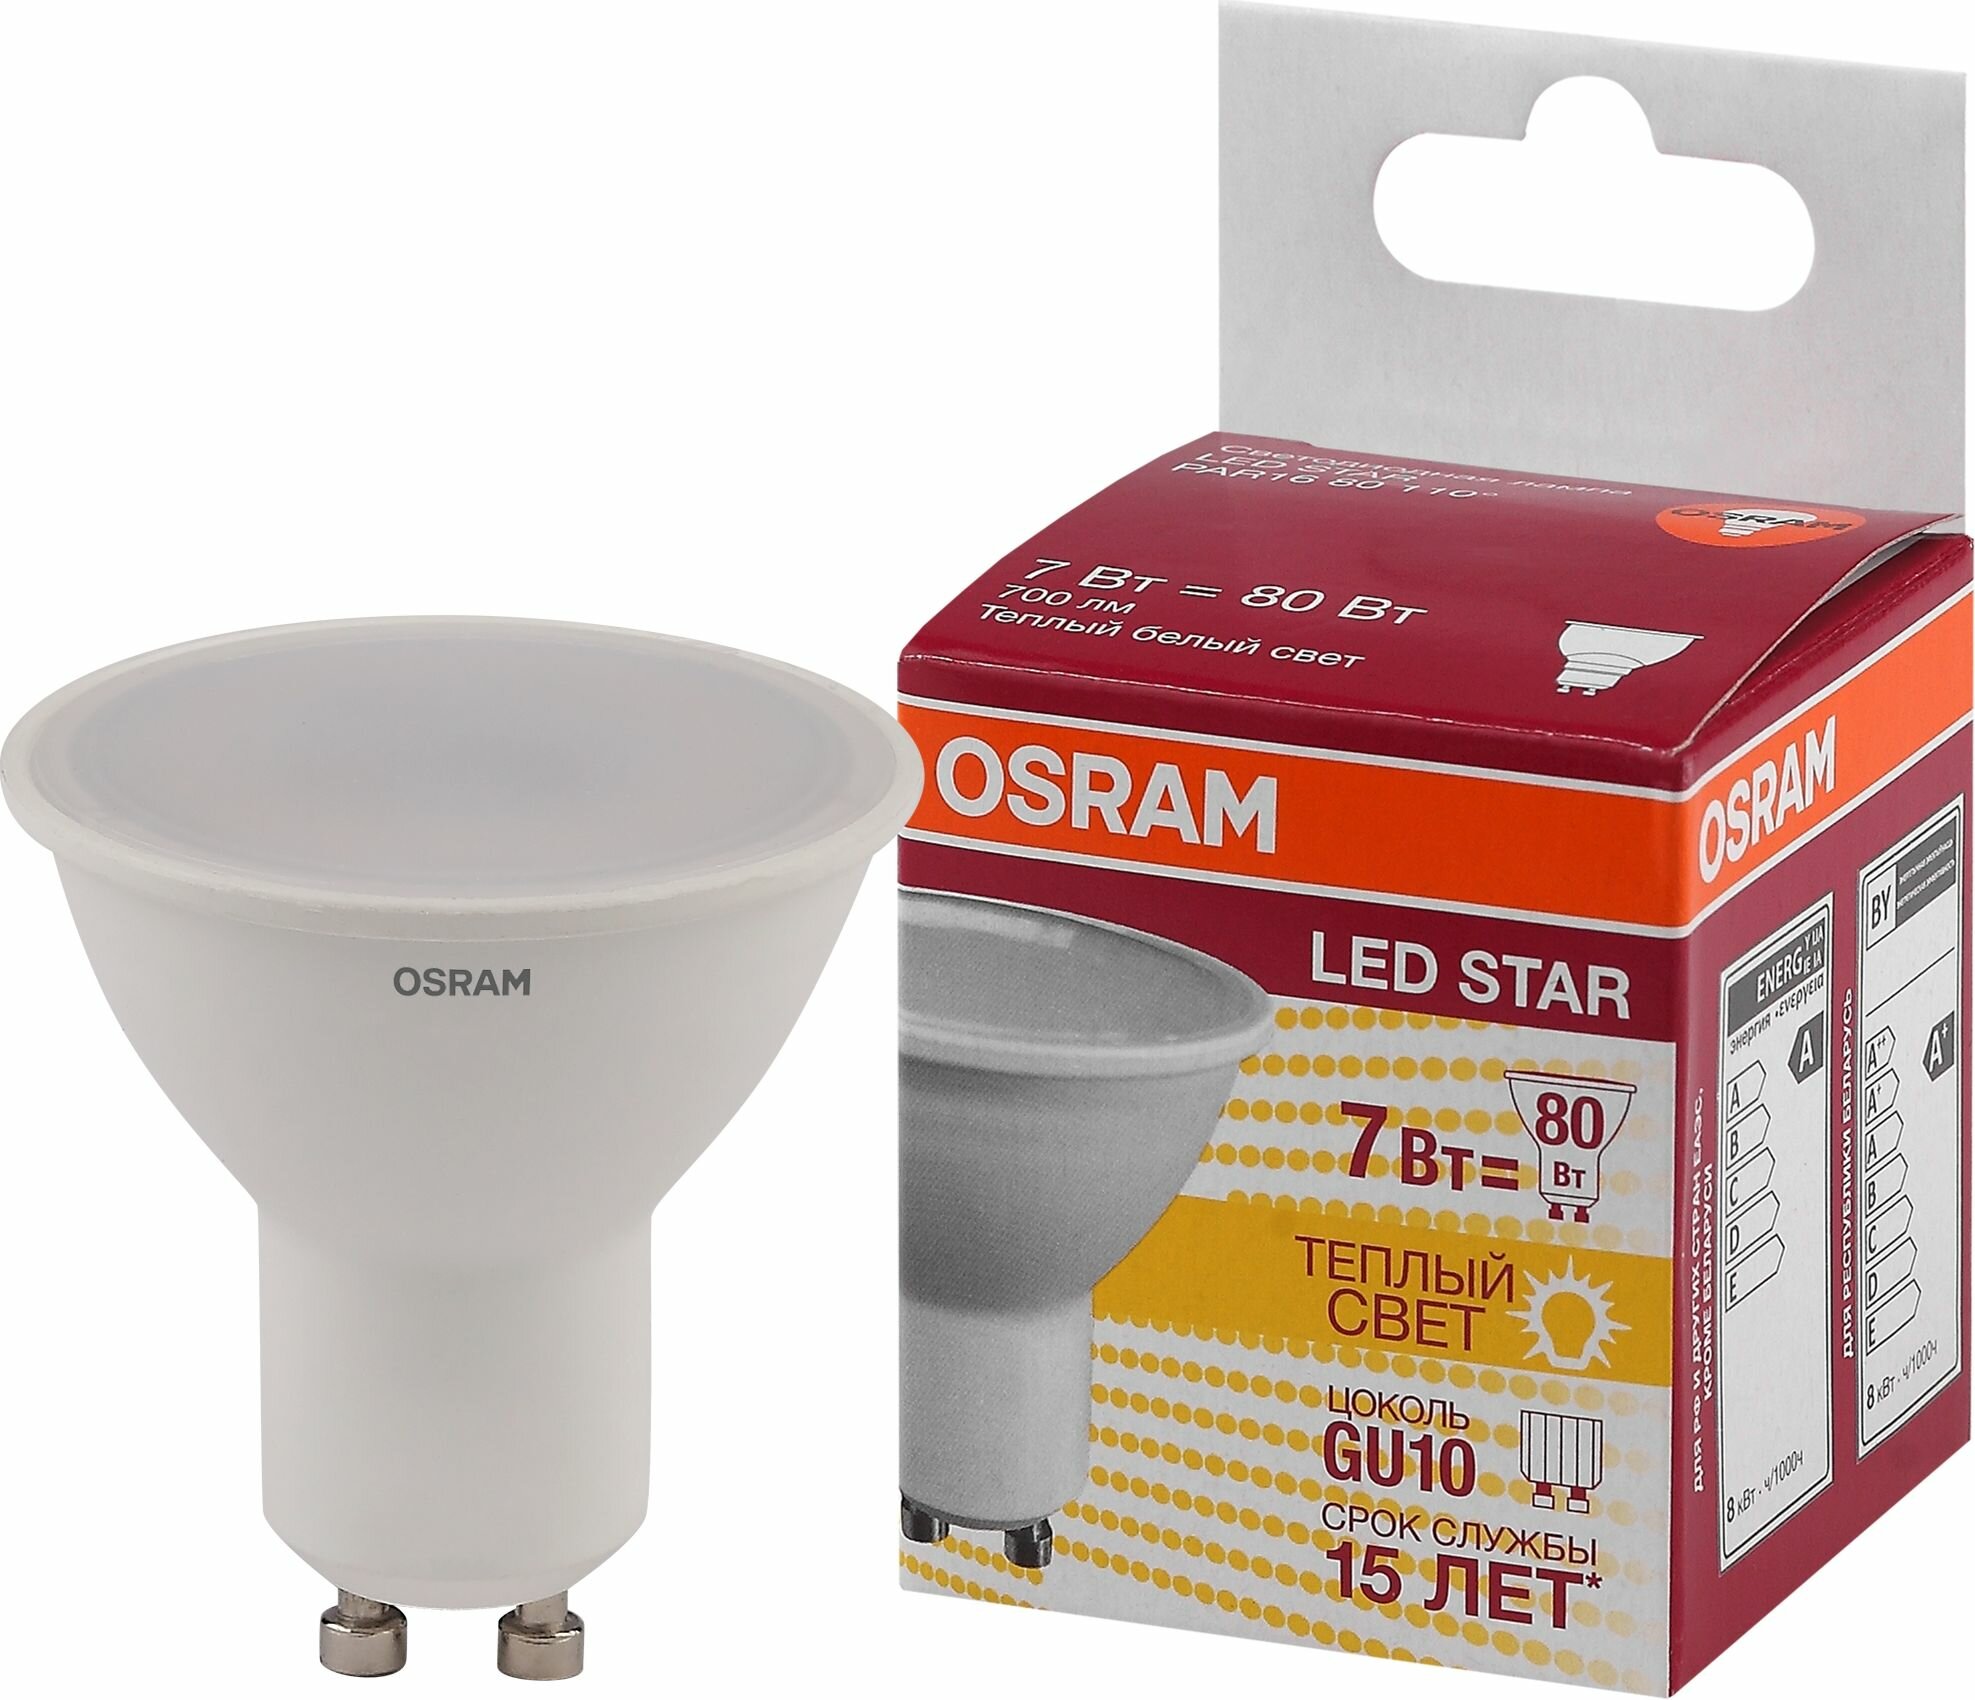 Лампа светодиодная Osram GU10 220-240 В 7 Вт спот матовая 700 лм тёплый белый свет - фото №18